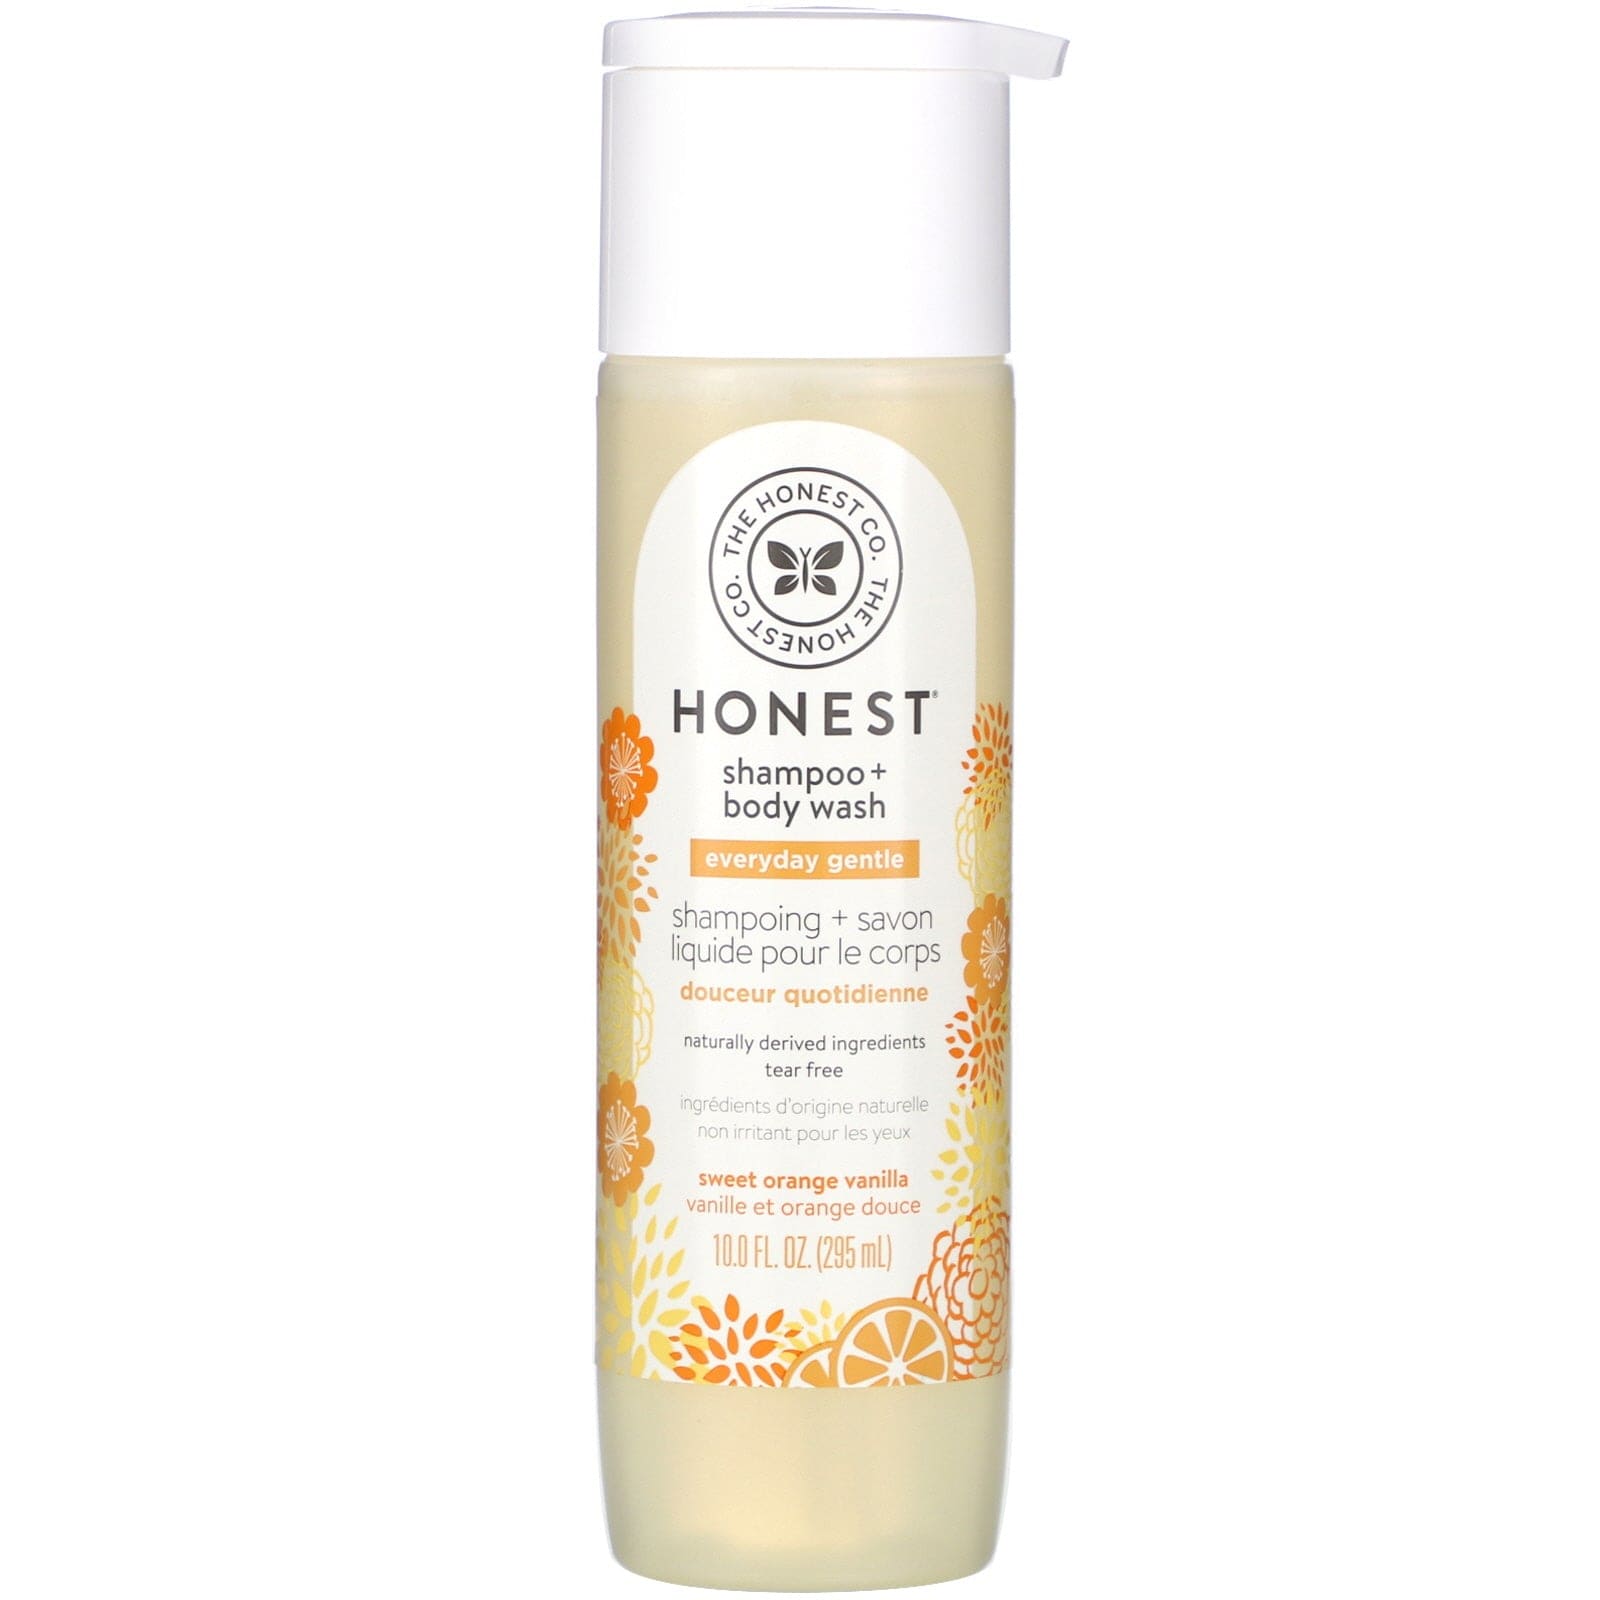 The Honest Company hair care 10 oz/296 ml The Honest Company Honest Shampoo & Body Wash - Sweet Orange Vanilla